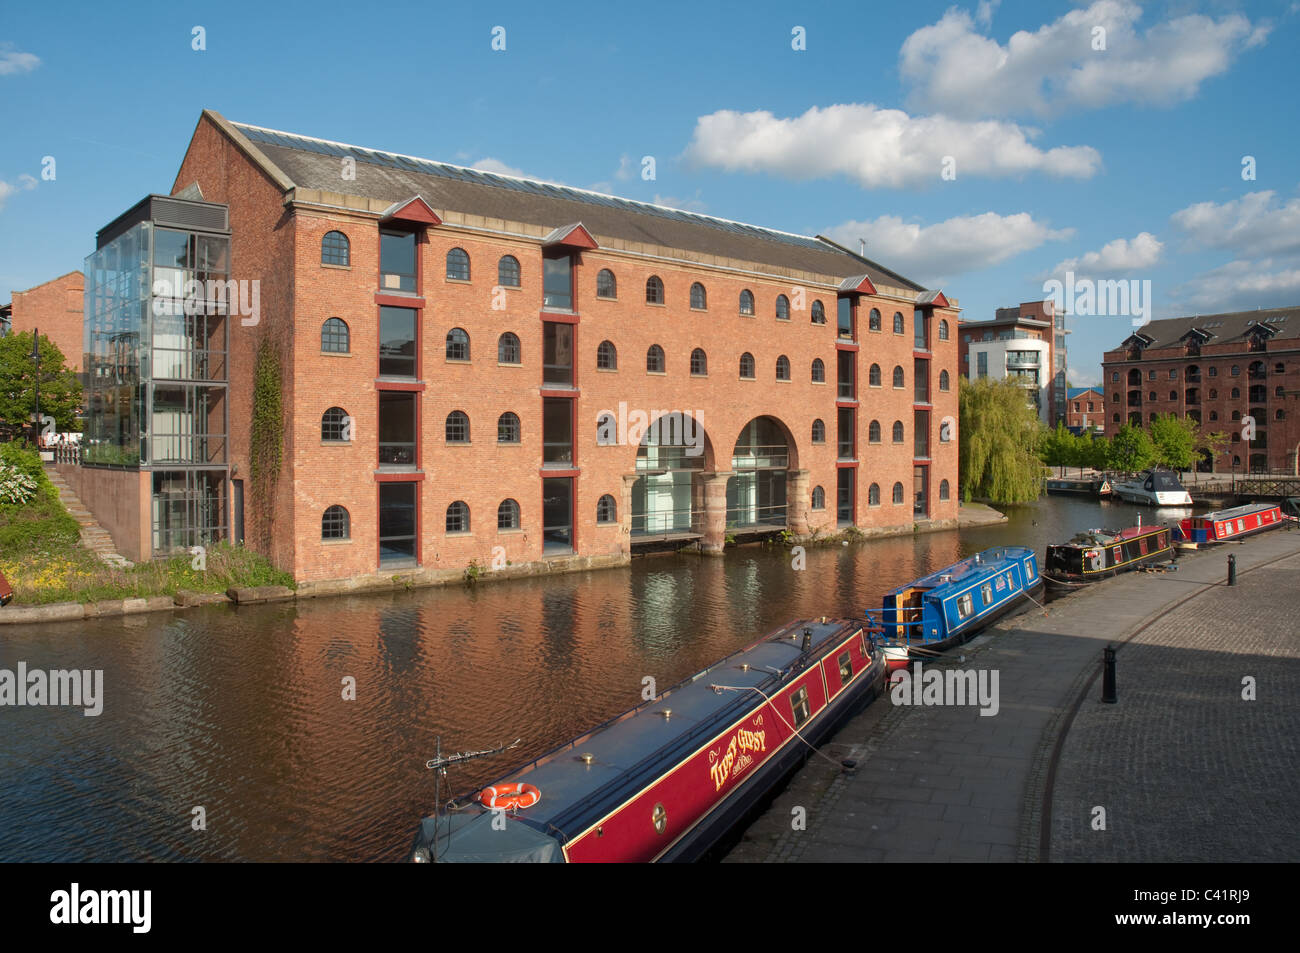 Ehemaligen Lagerhaus an den Ufern des Bridgewater Canal,Castlefield,Manchester.Converted für kommerzielle/Office verwenden. Stockfoto